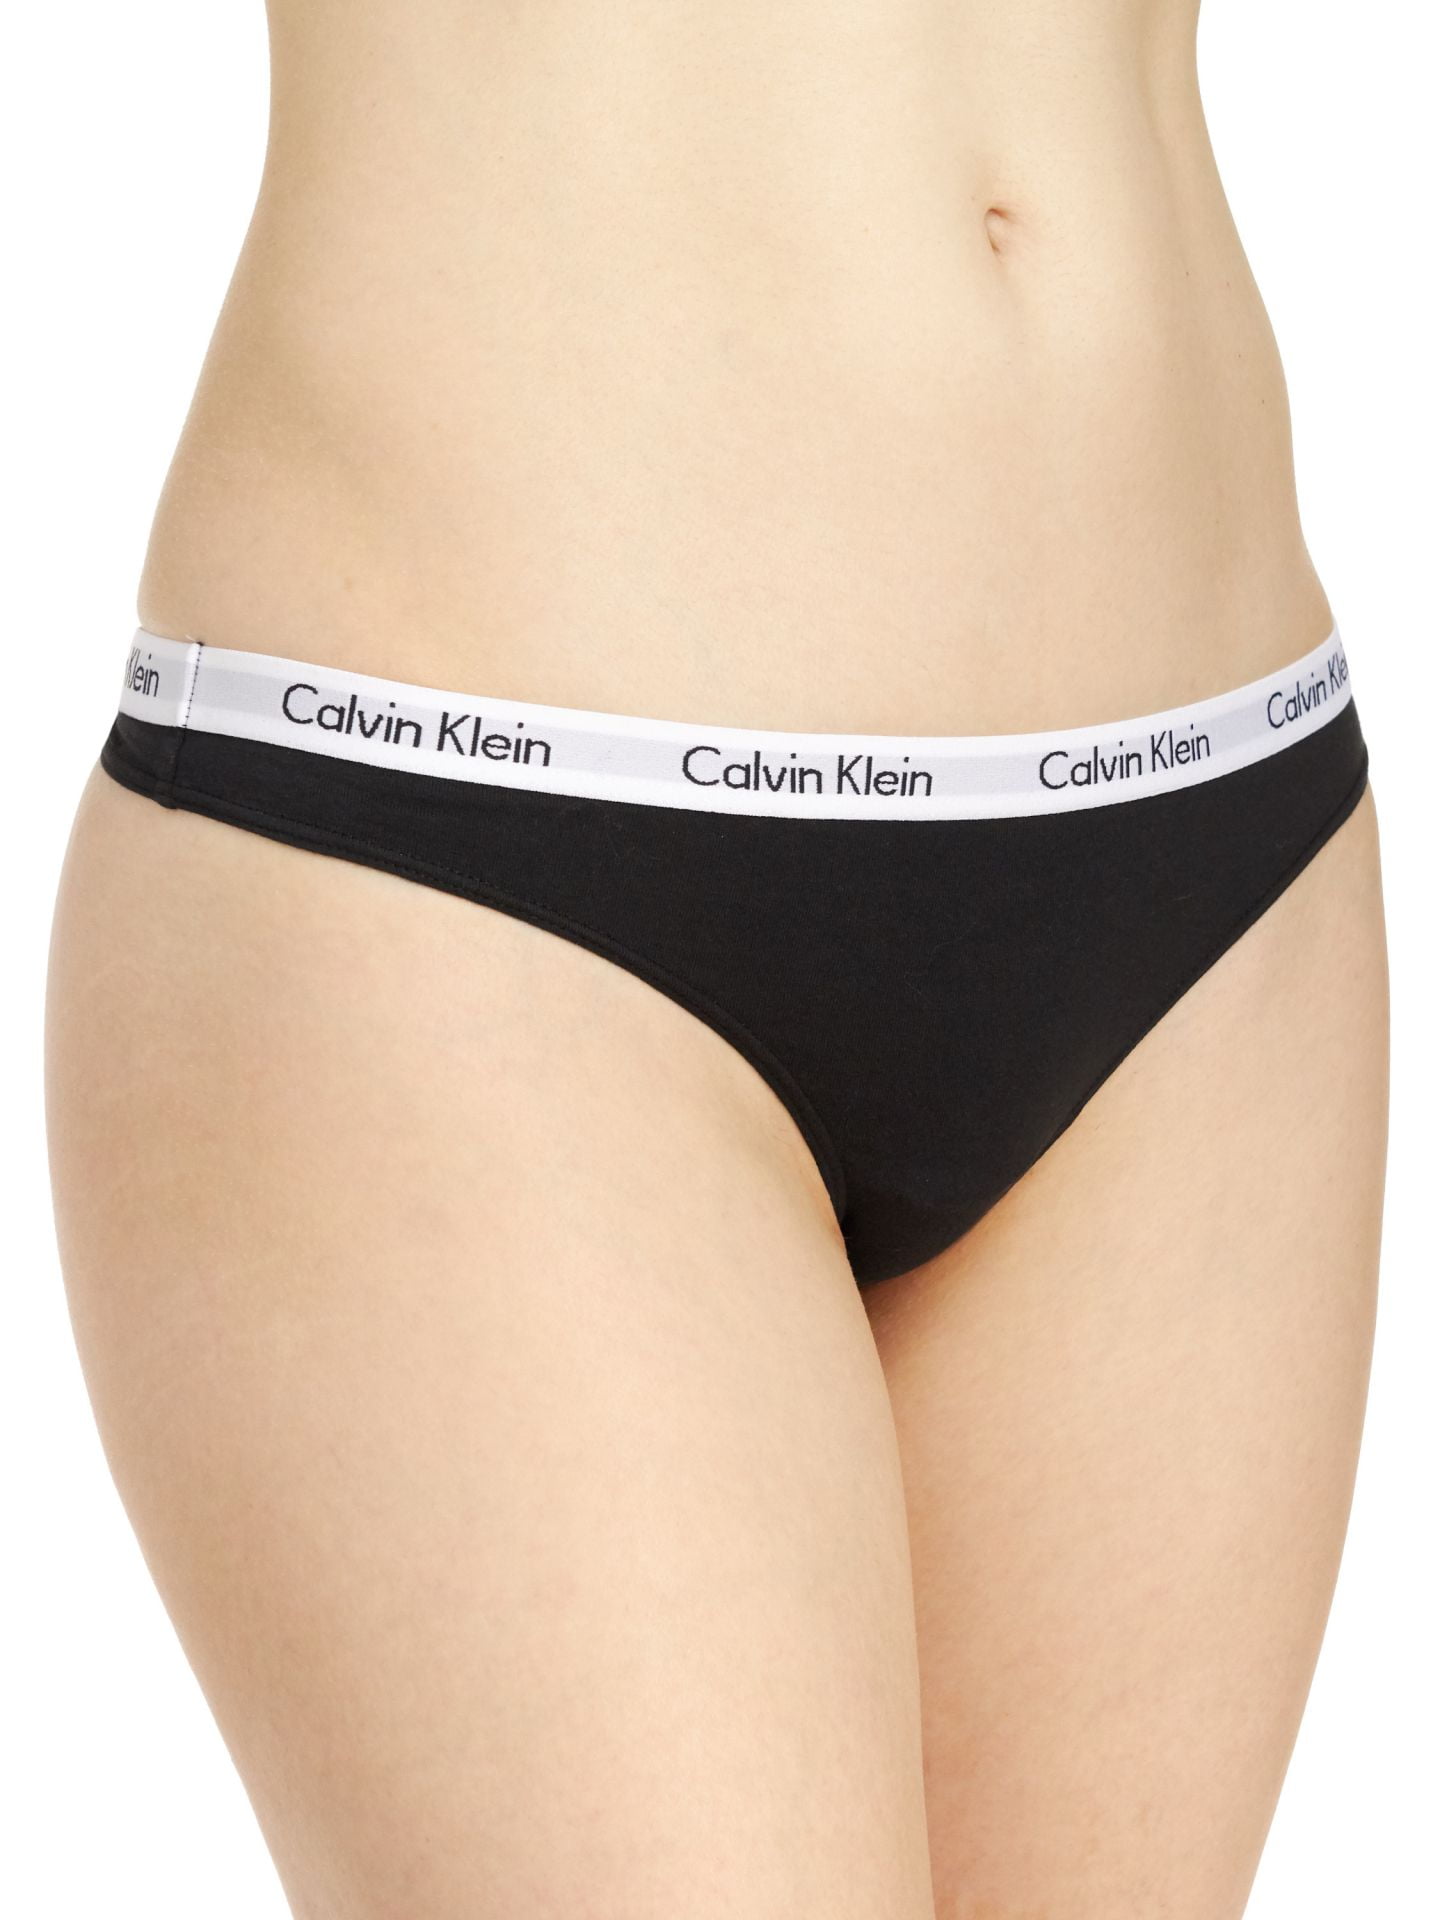 Calvin Klein Women's Carousel Thong - 3 Pack, Black/Grey/White, Large -  